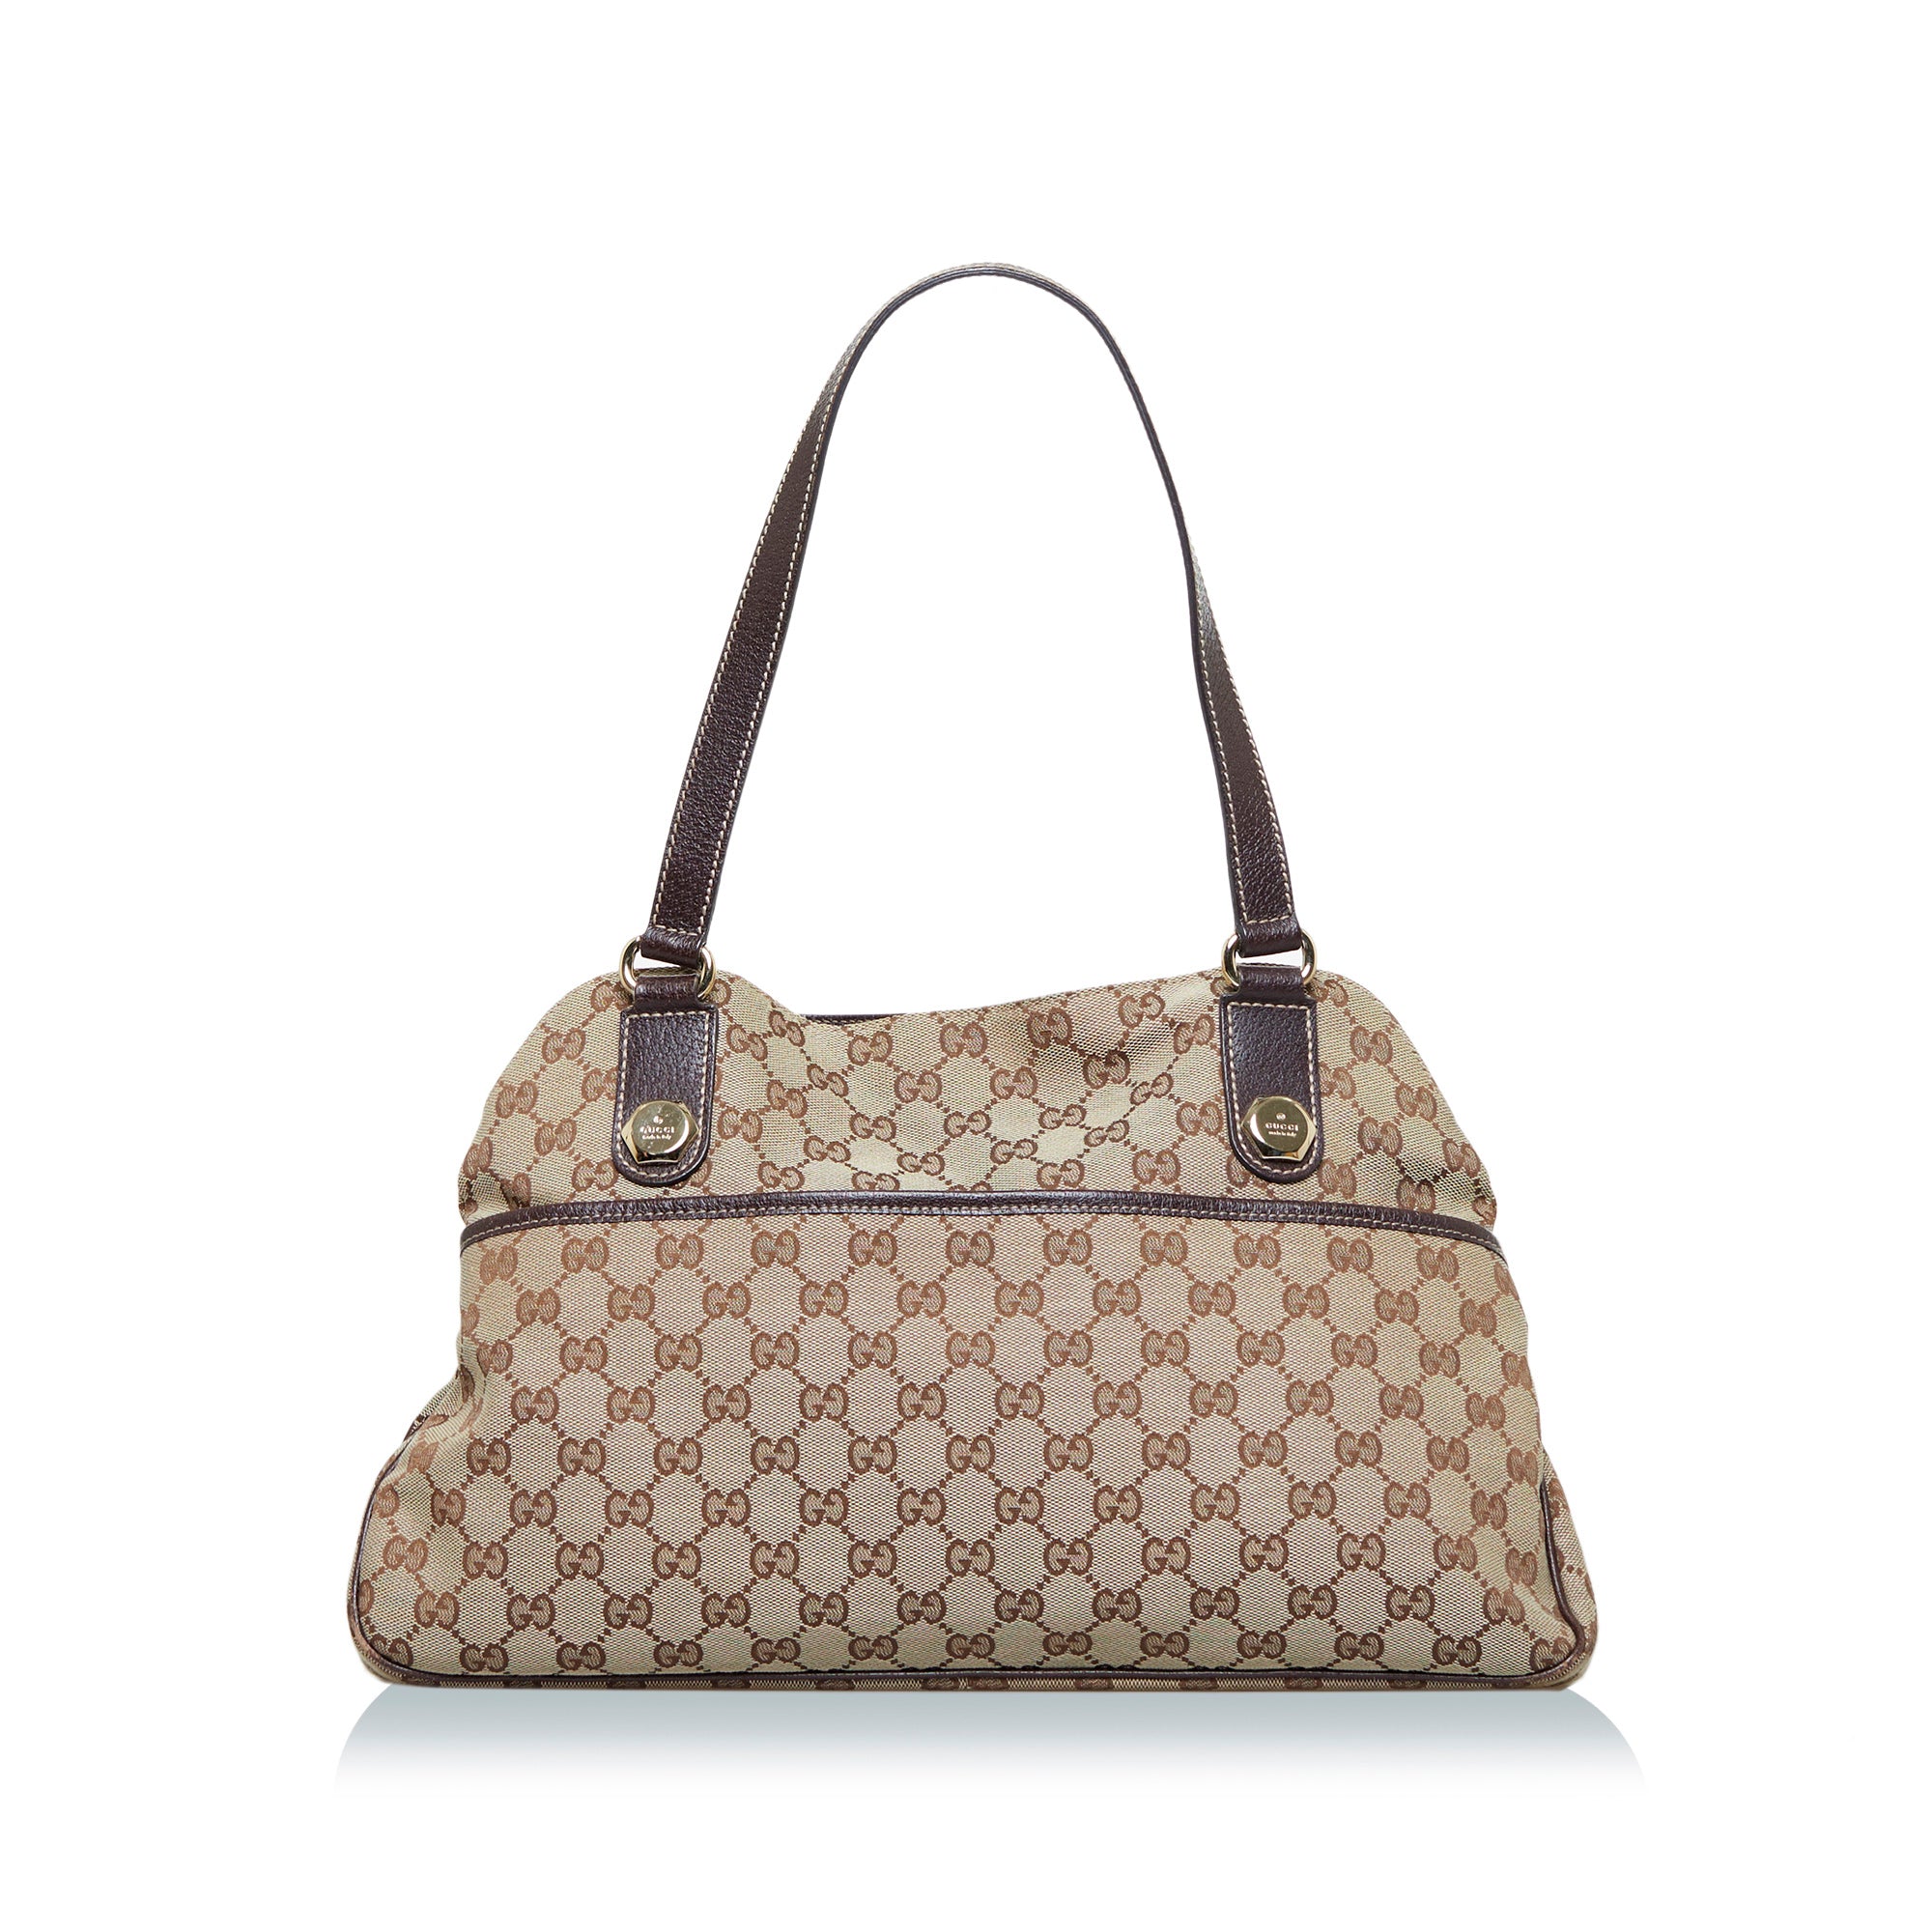 Gucci, Bags, Original Gucci Bag